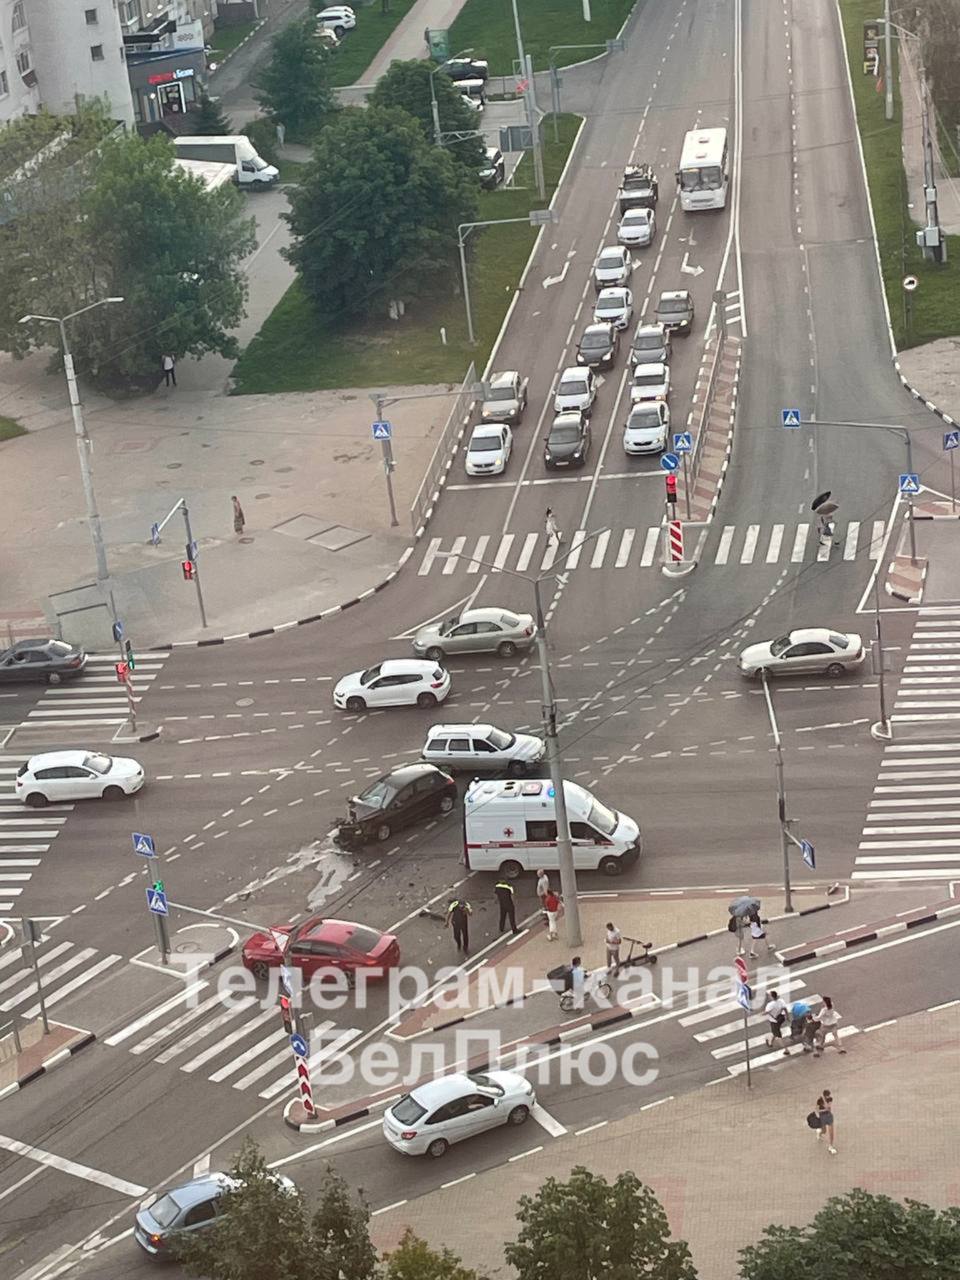 ‼  Серьёзное ДТП произошло на проспекте Ватутина в Белгороде.  Из-за аварии движение на участке дороги затруднено. На месте происшествия работают экстренные службы.